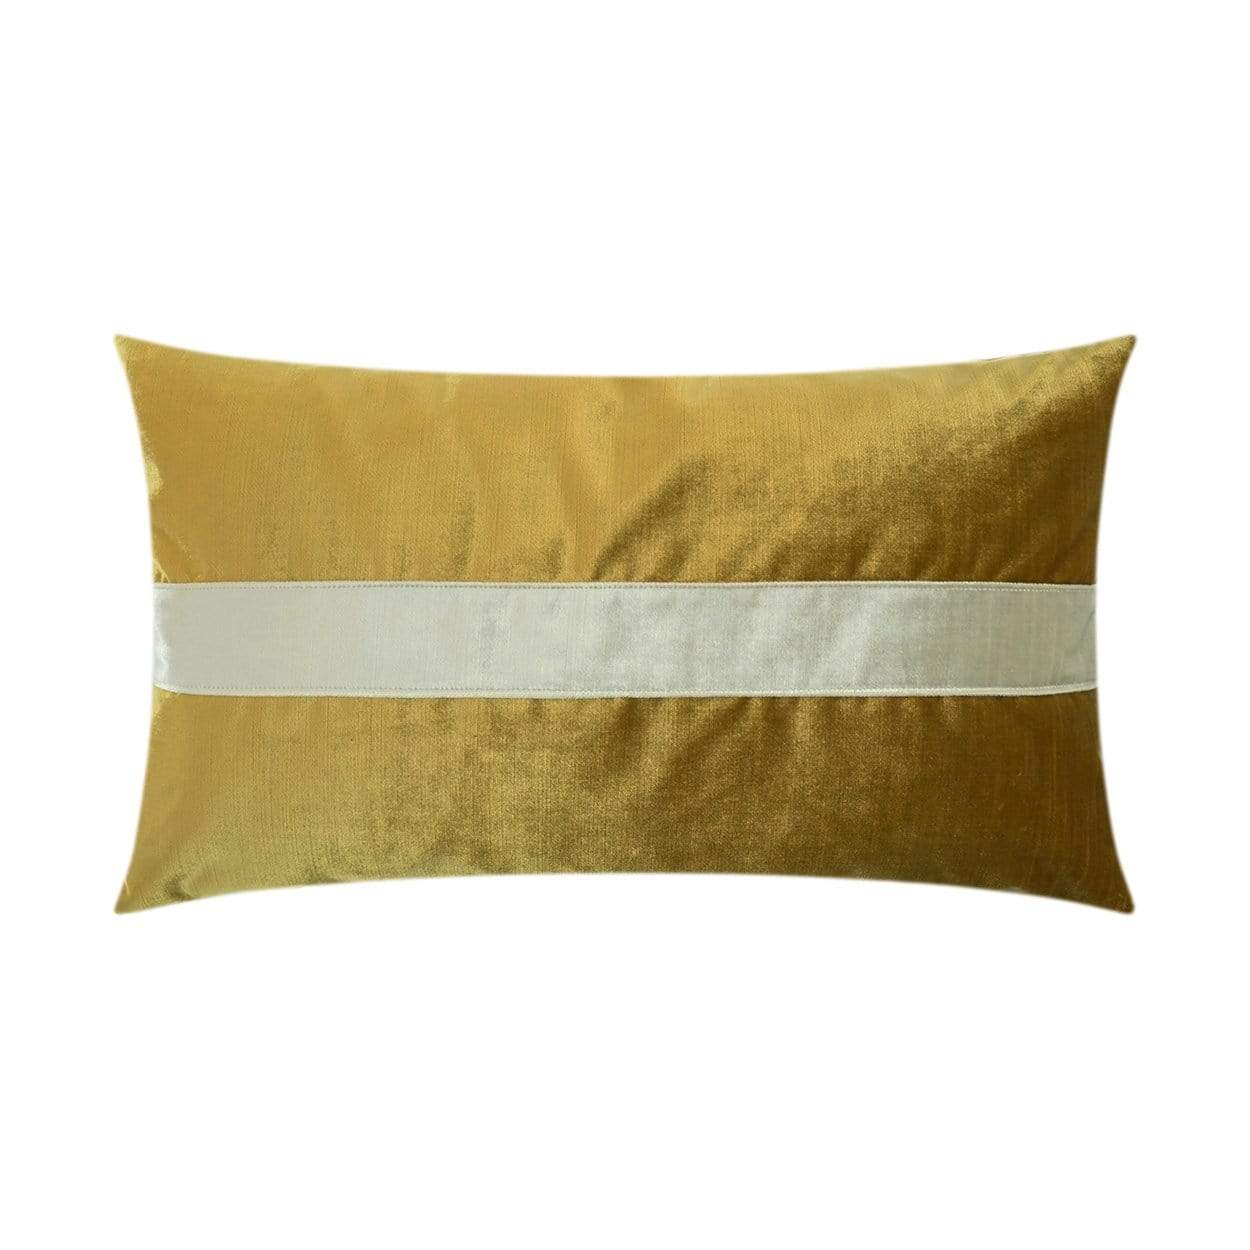 D.V. Kap D.V. Kap Iridescence Band Lumbar Pillow - Available in 8 Colors Baltic 3385-B